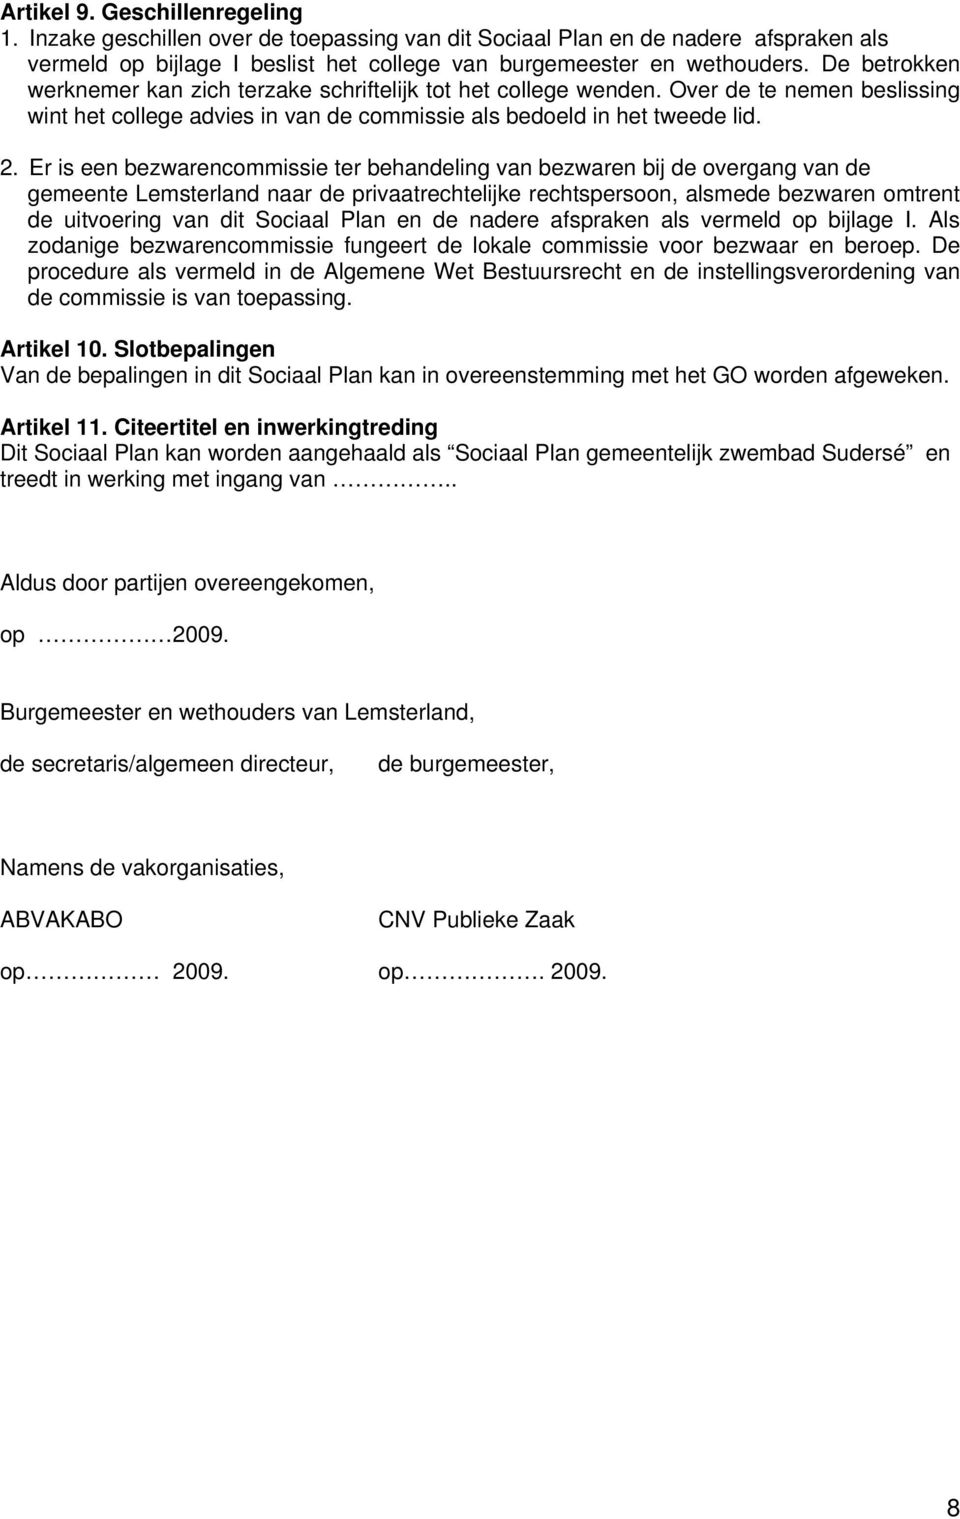 Er is een bezwarencommissie ter behandeling van bezwaren bij de overgang van de gemeente Lemsterland naar de privaatrechtelijke rechtspersoon, alsmede bezwaren omtrent de uitvoering van dit Sociaal